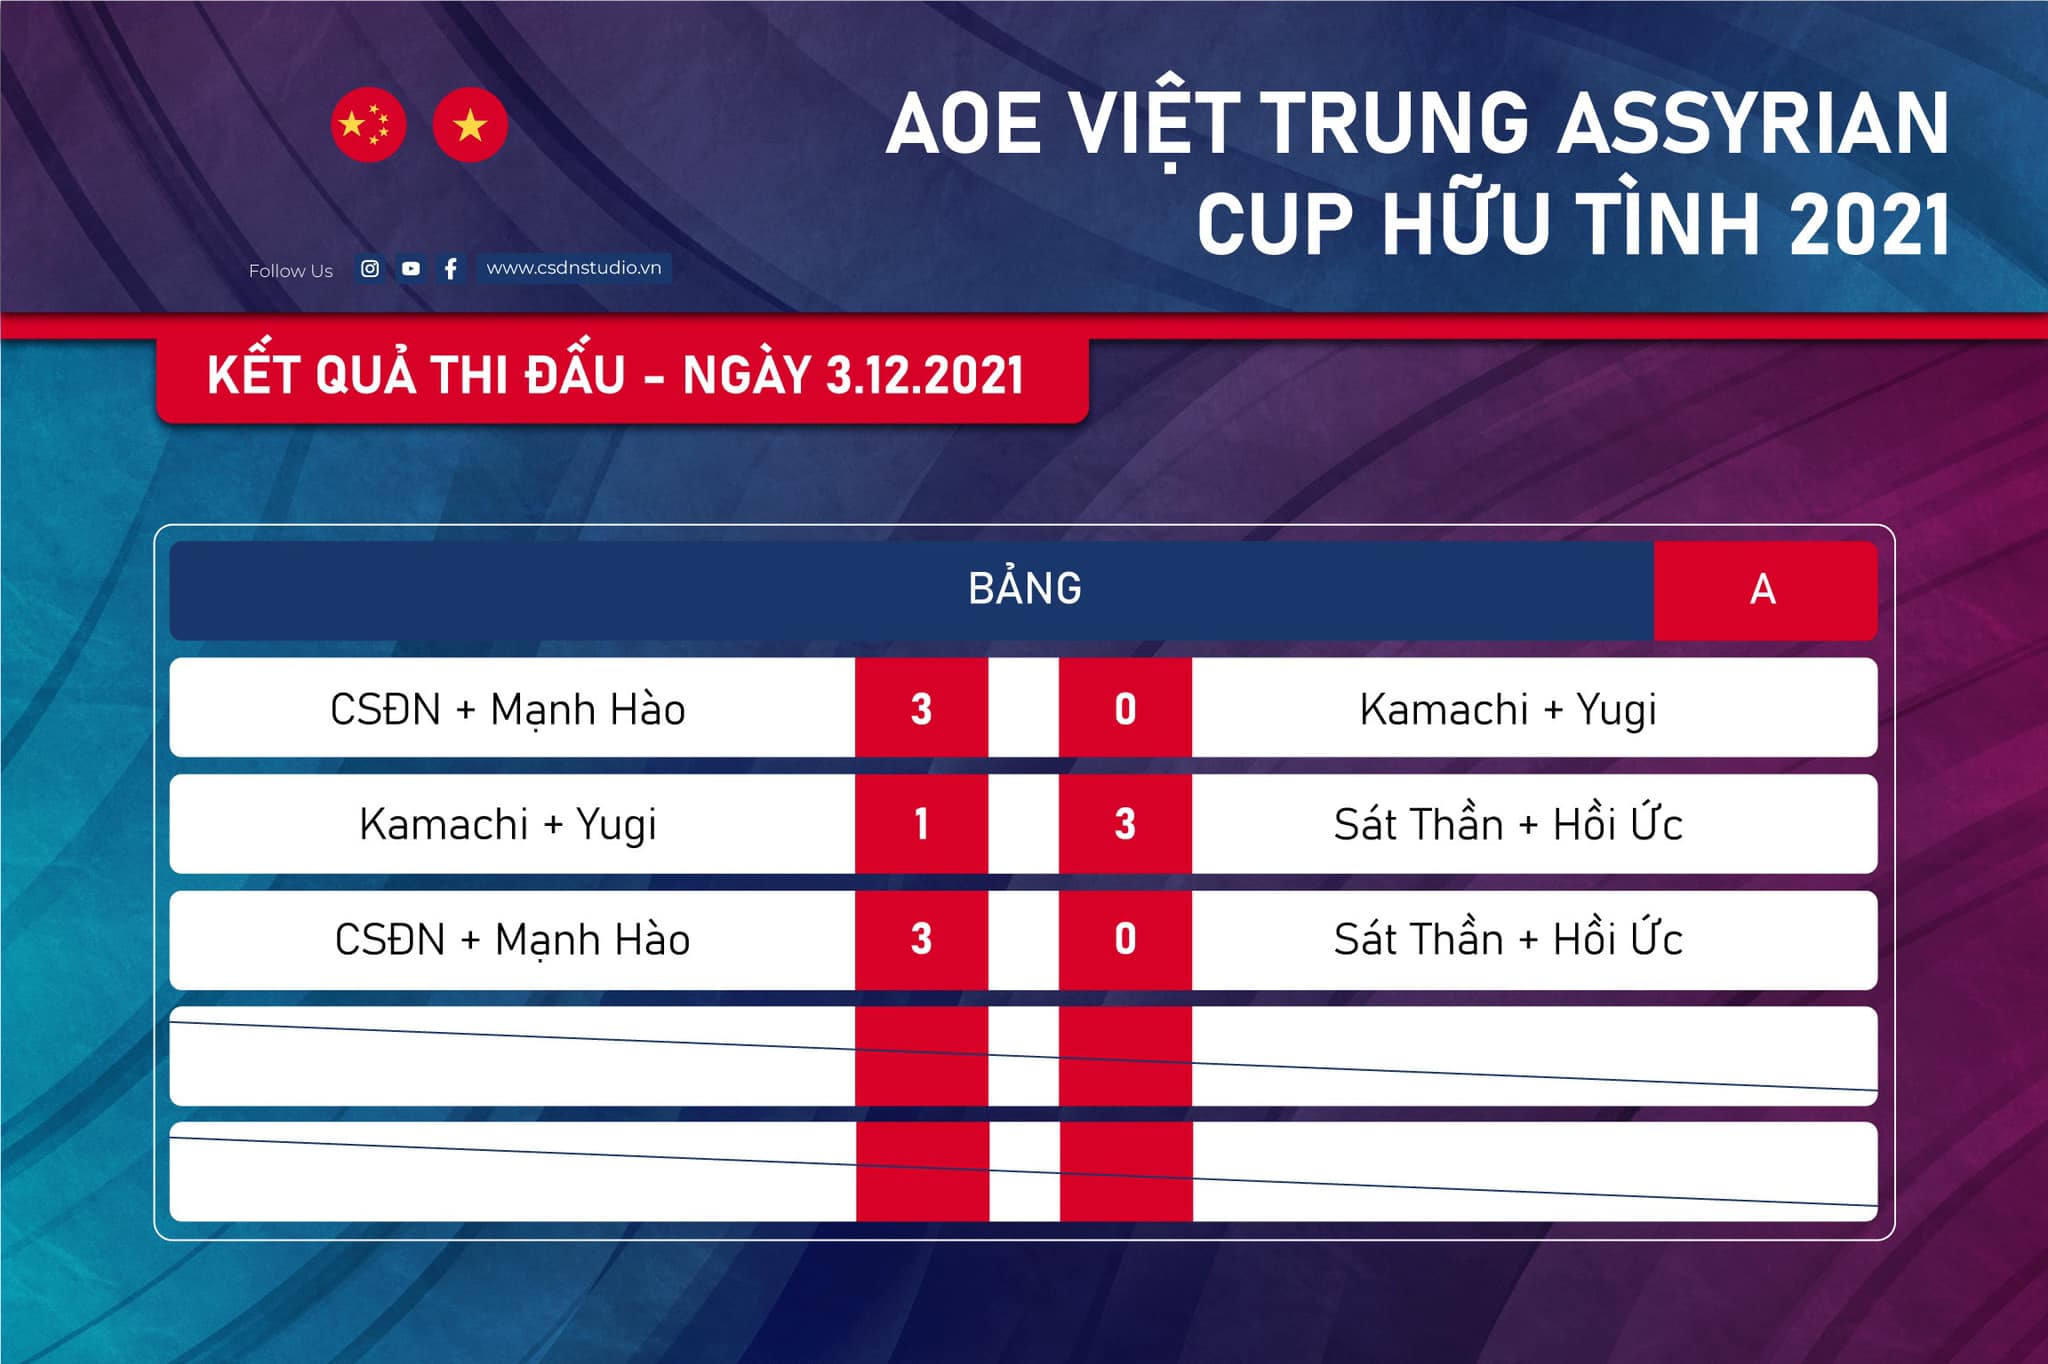 AoE Hữu Tình Cup 2021: Team Chim Sẻ Đi Nắng vượt qua vòng bảng dễ dàng